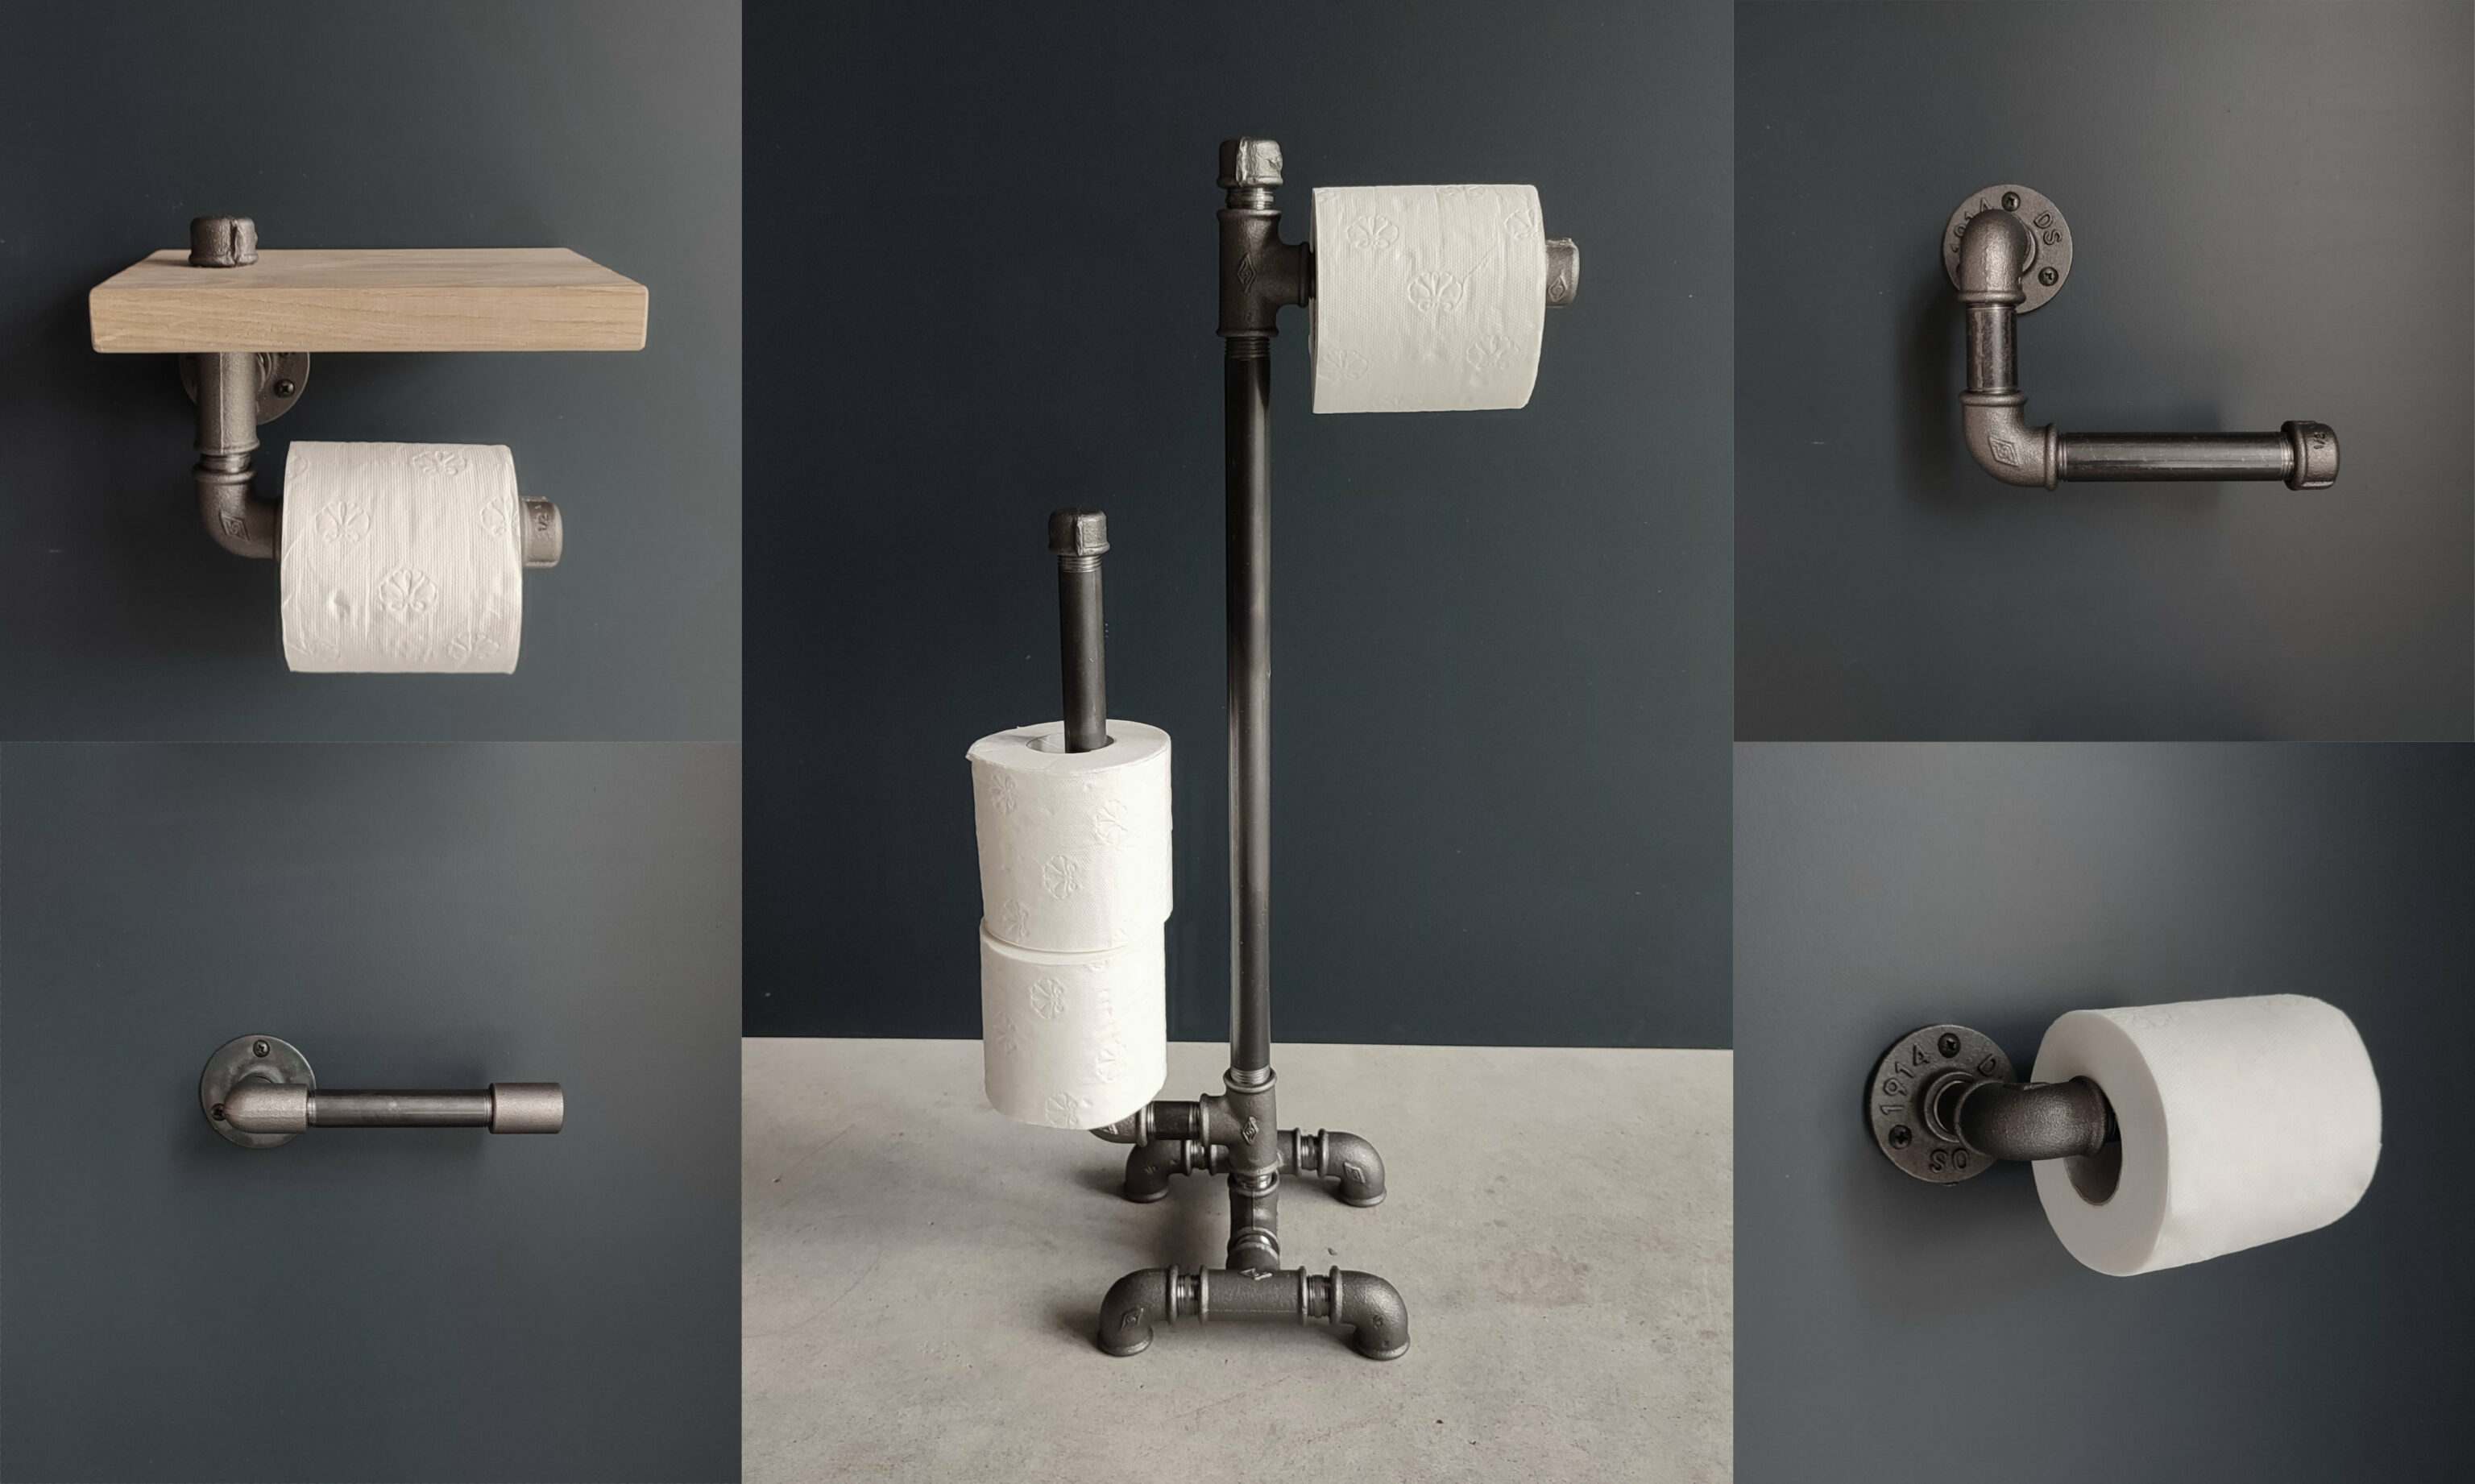 5 modellen van toiletpapierhouder te maken in industriële stijl voor uw kleine hoekje in sanitairdecoratie - Blog déco -. MC Fact